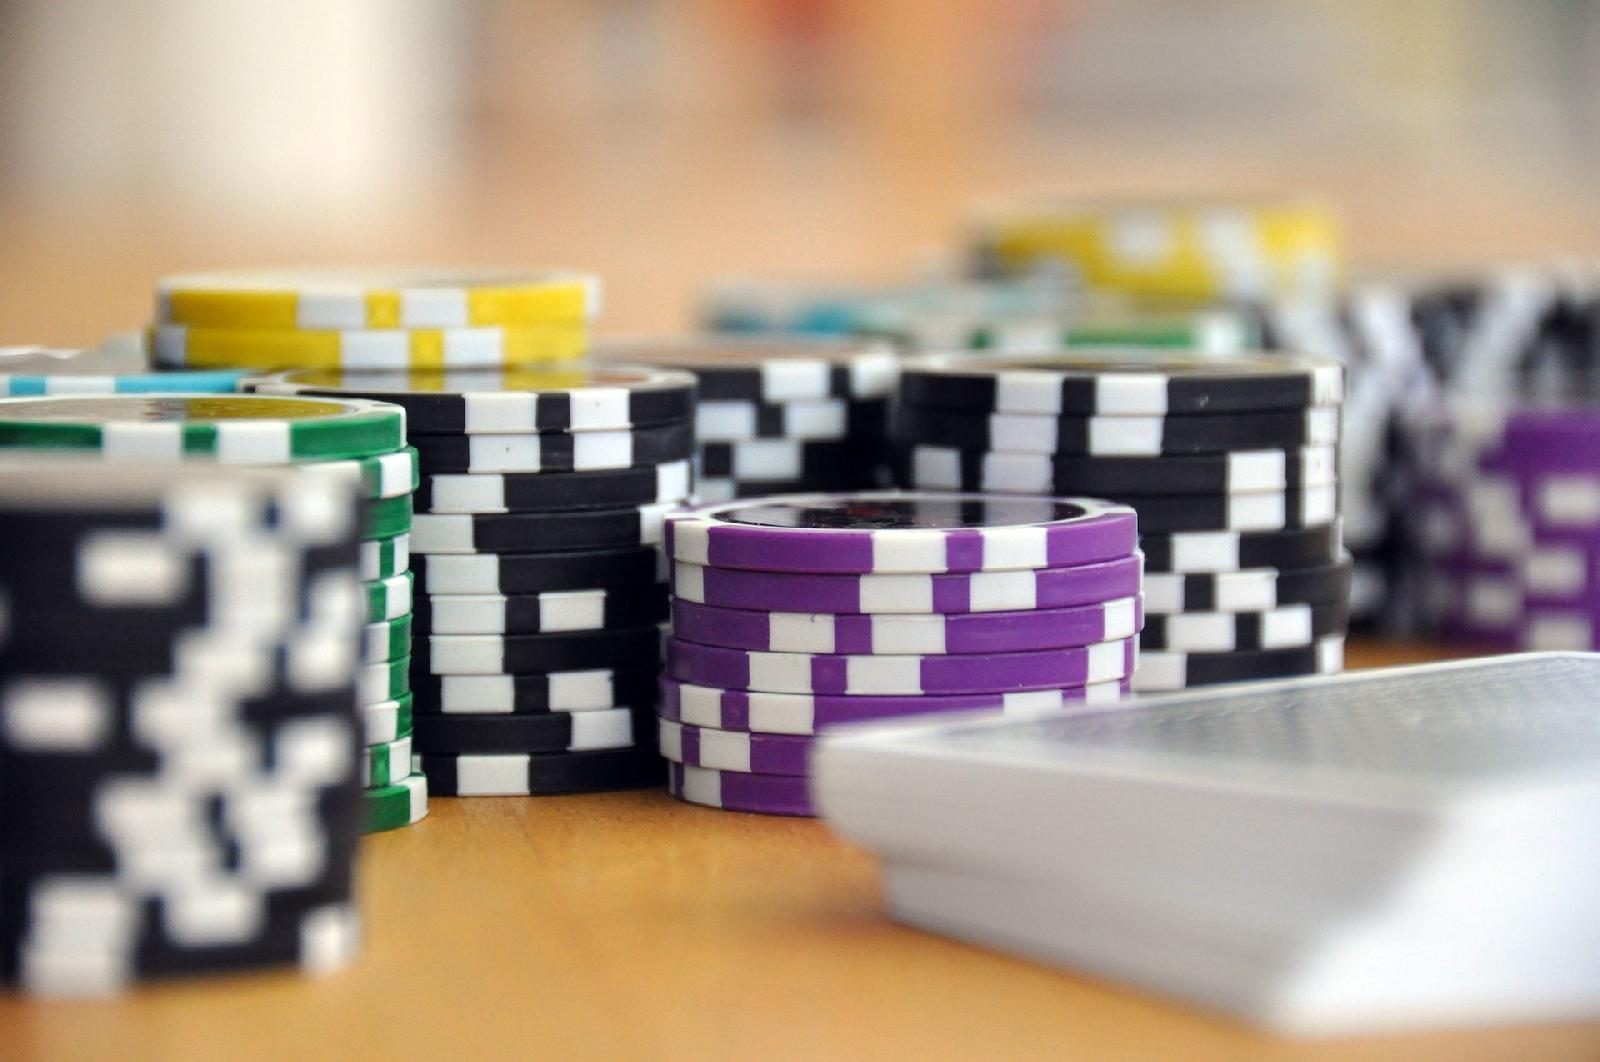 Le coin poker : quand les passionnes de jeux se rassemblent